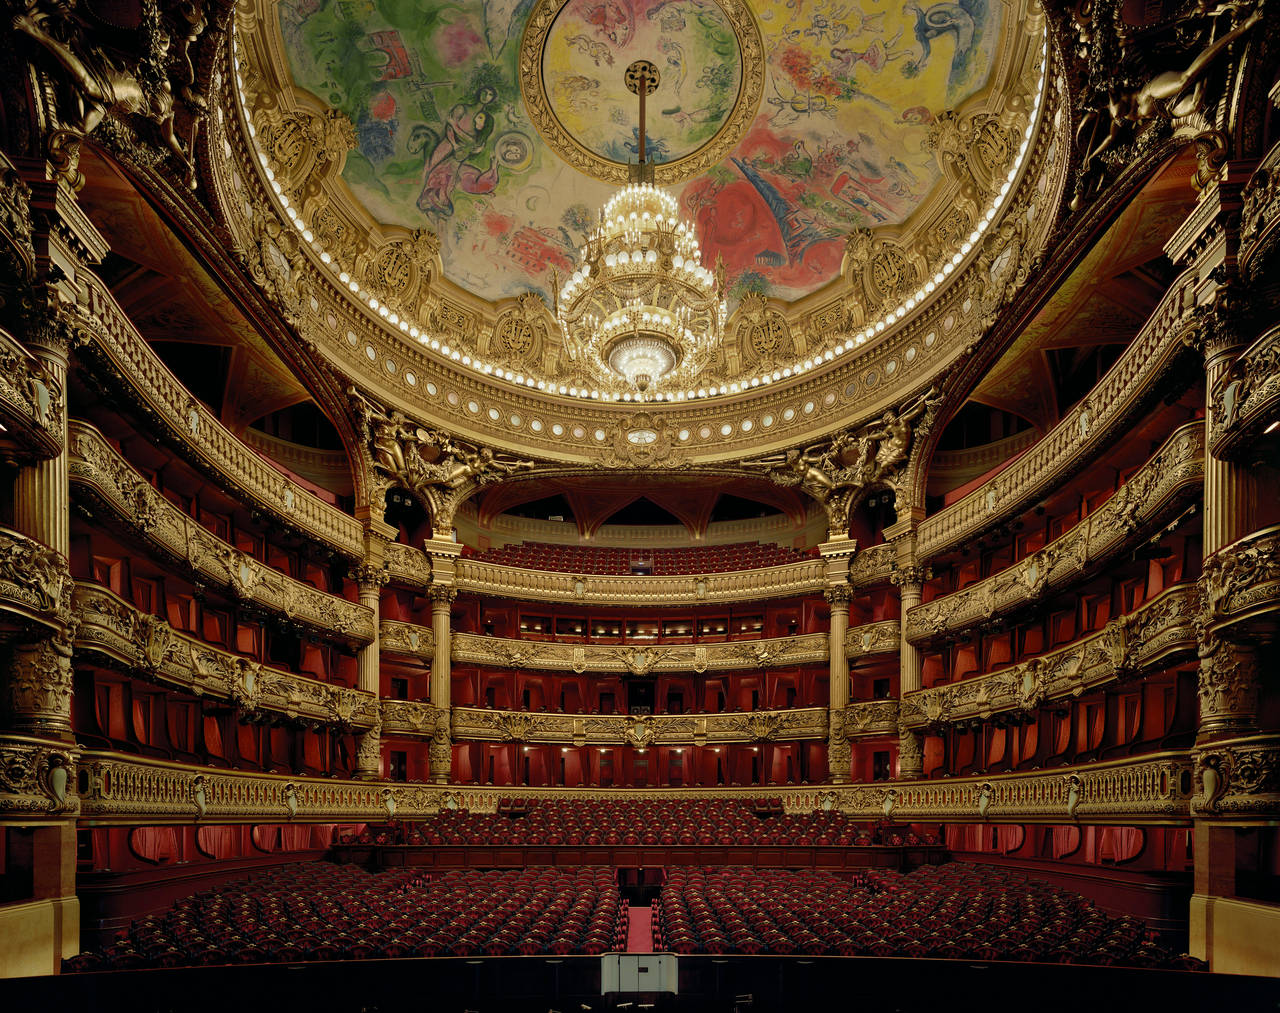 Palais Garnier, Paris, France - Photograph by David Leventi